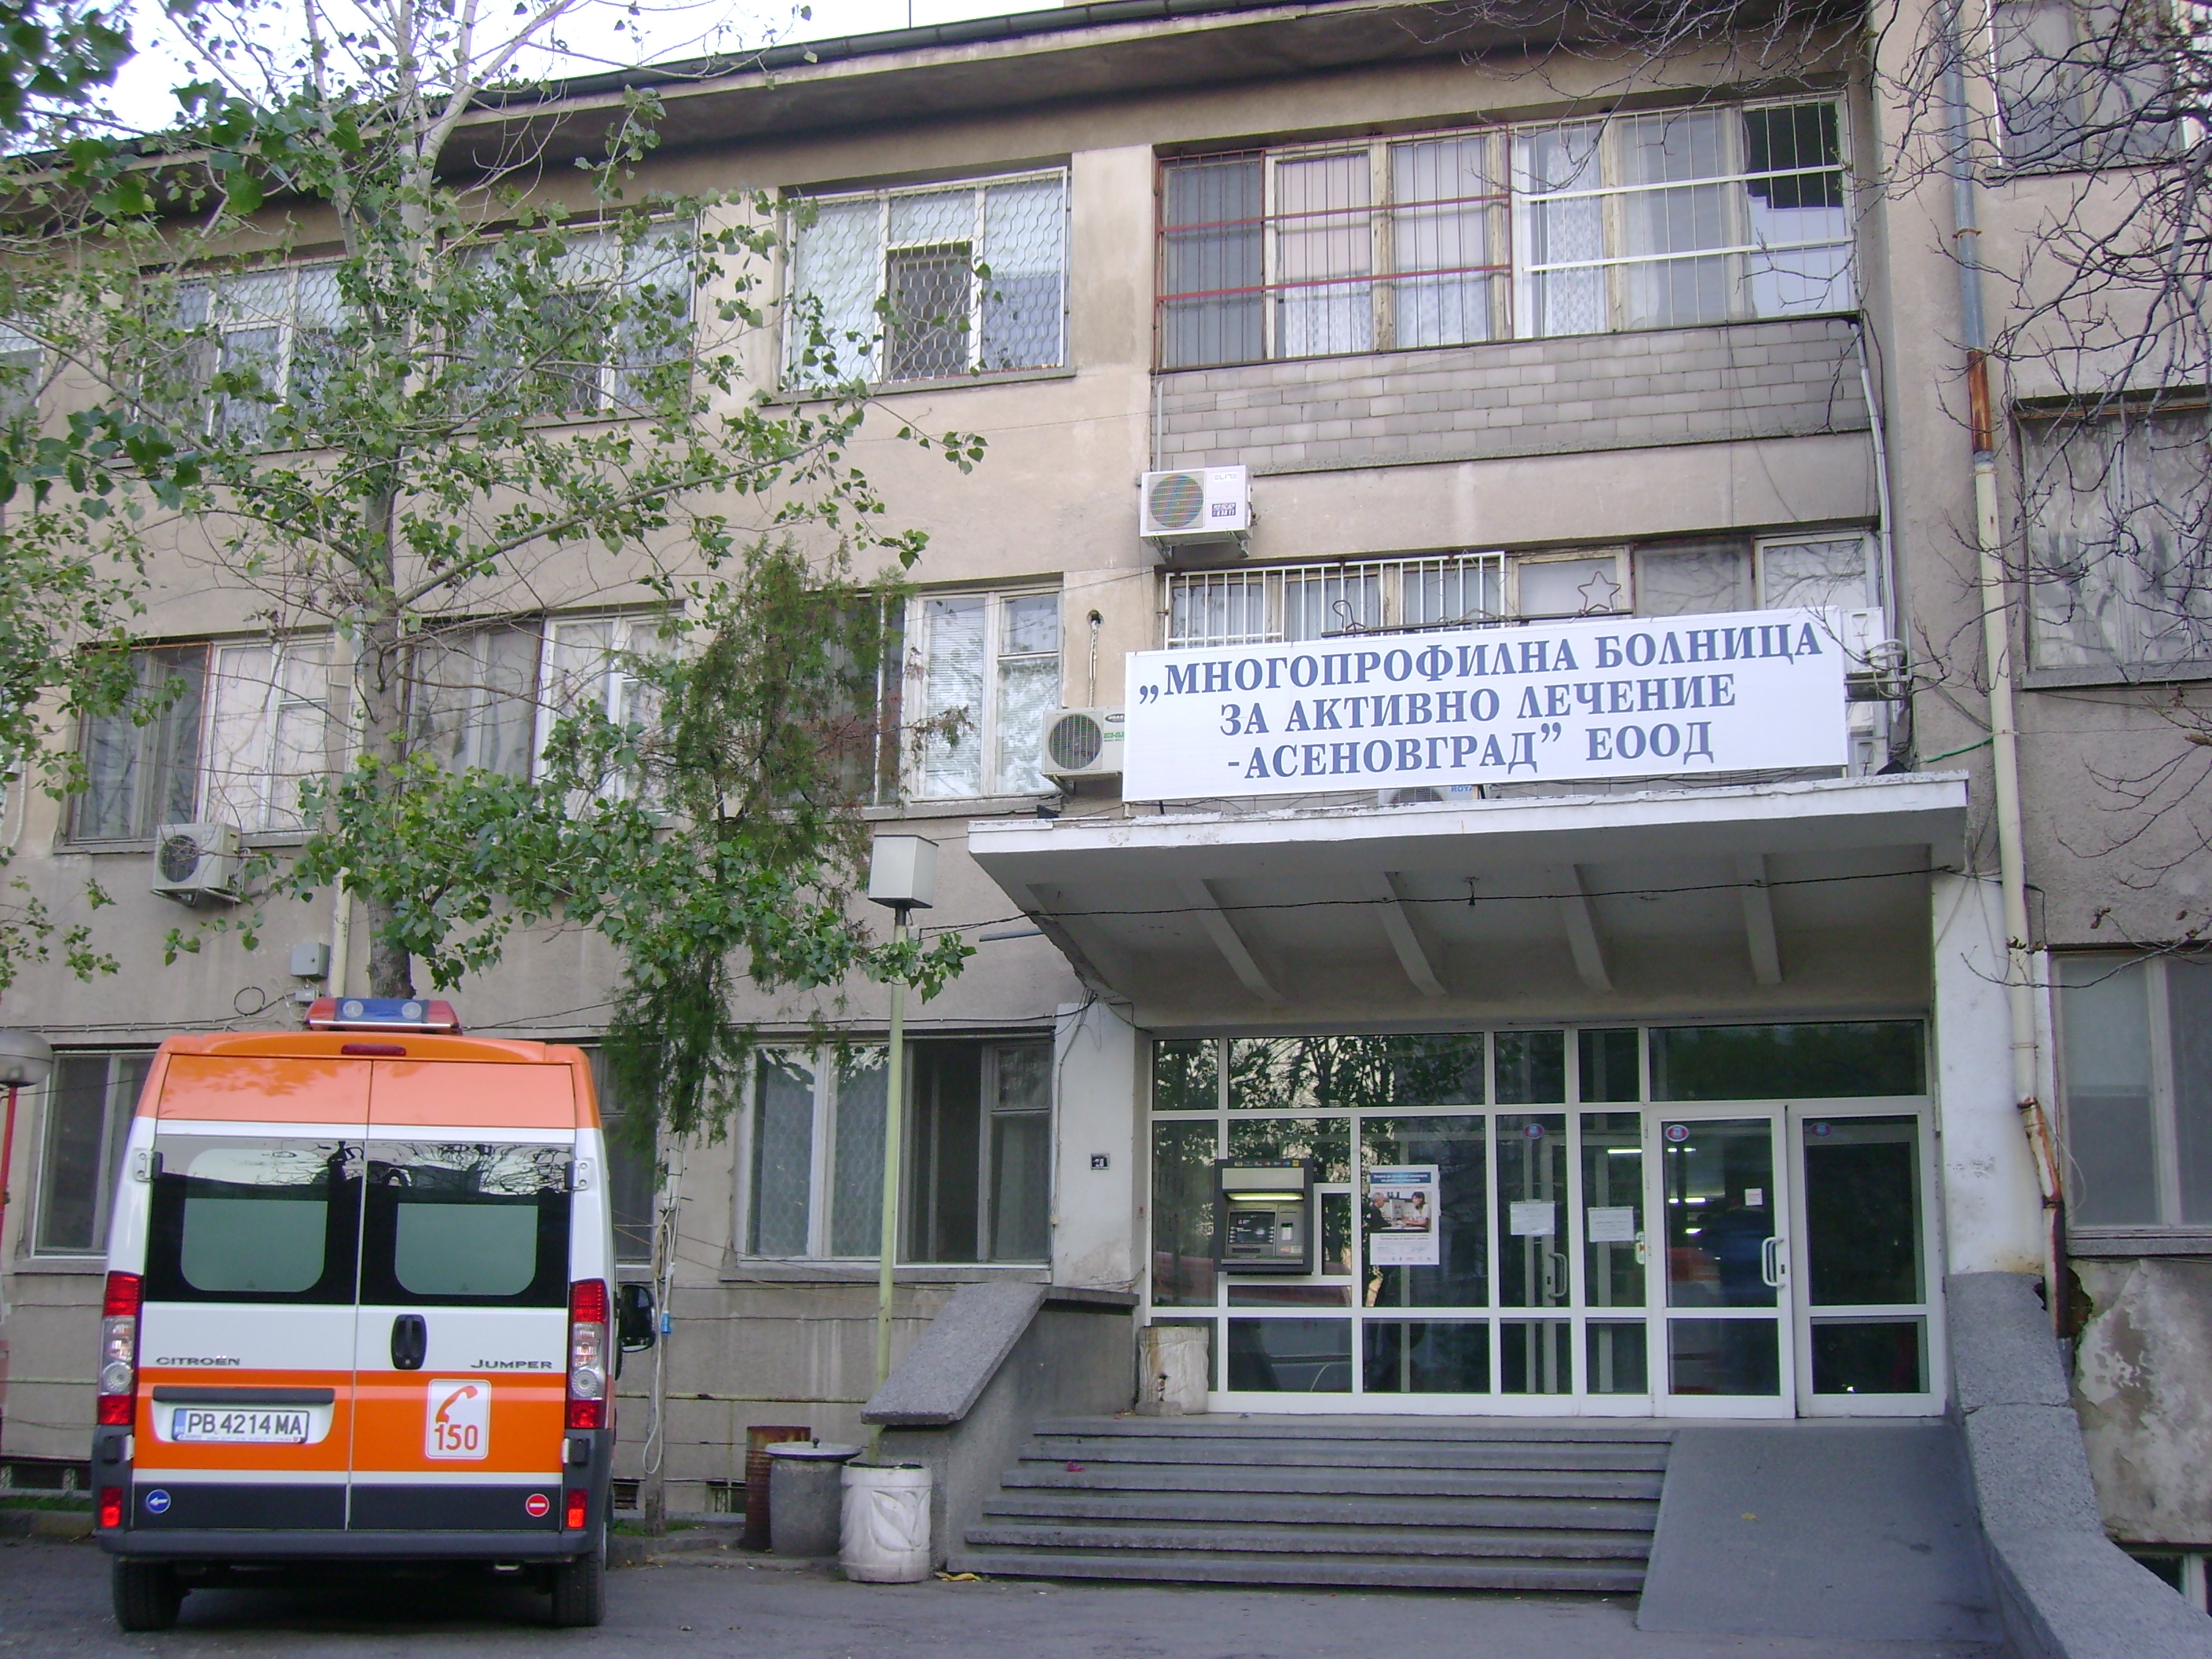 Момиченцето издъхна на 9 април в болницата в Асеновград четири часа след раждането